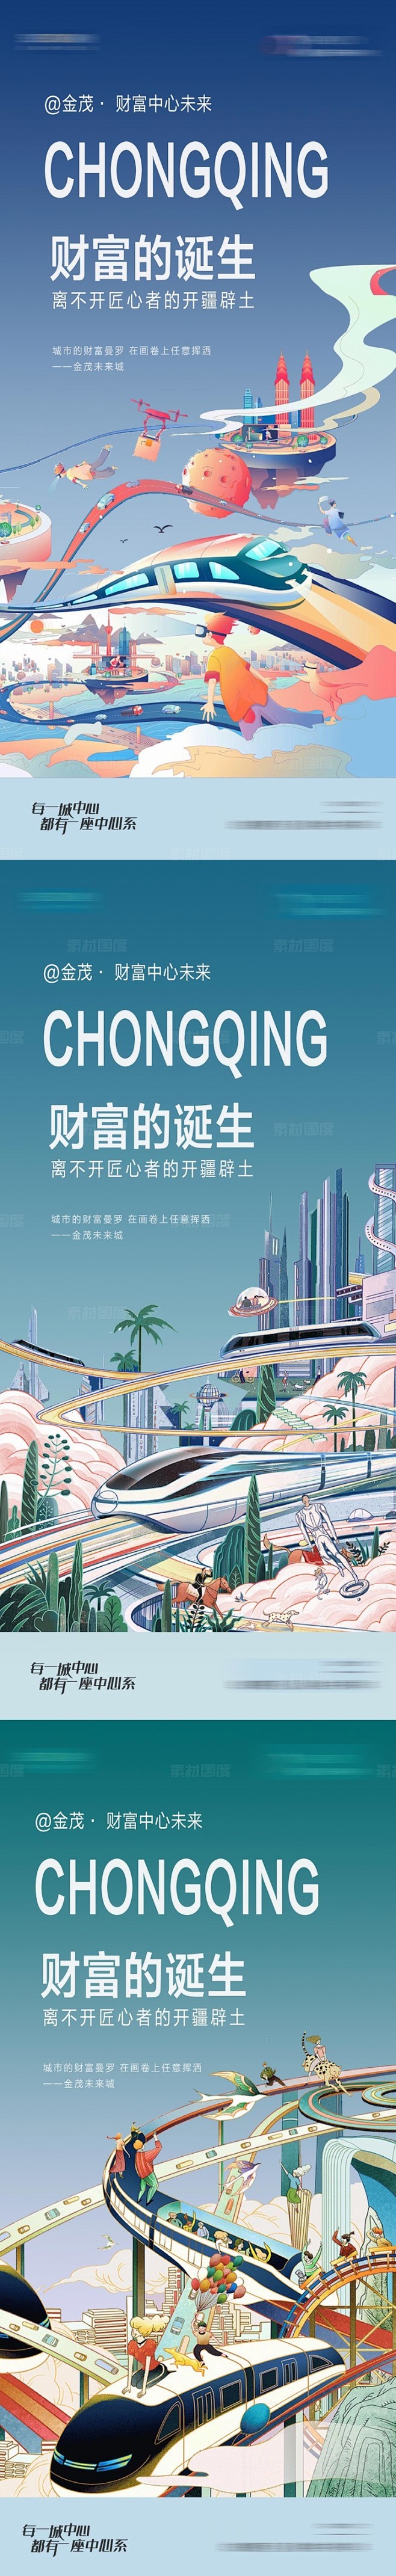 地产商业综合体系列海报手绘高铁城市